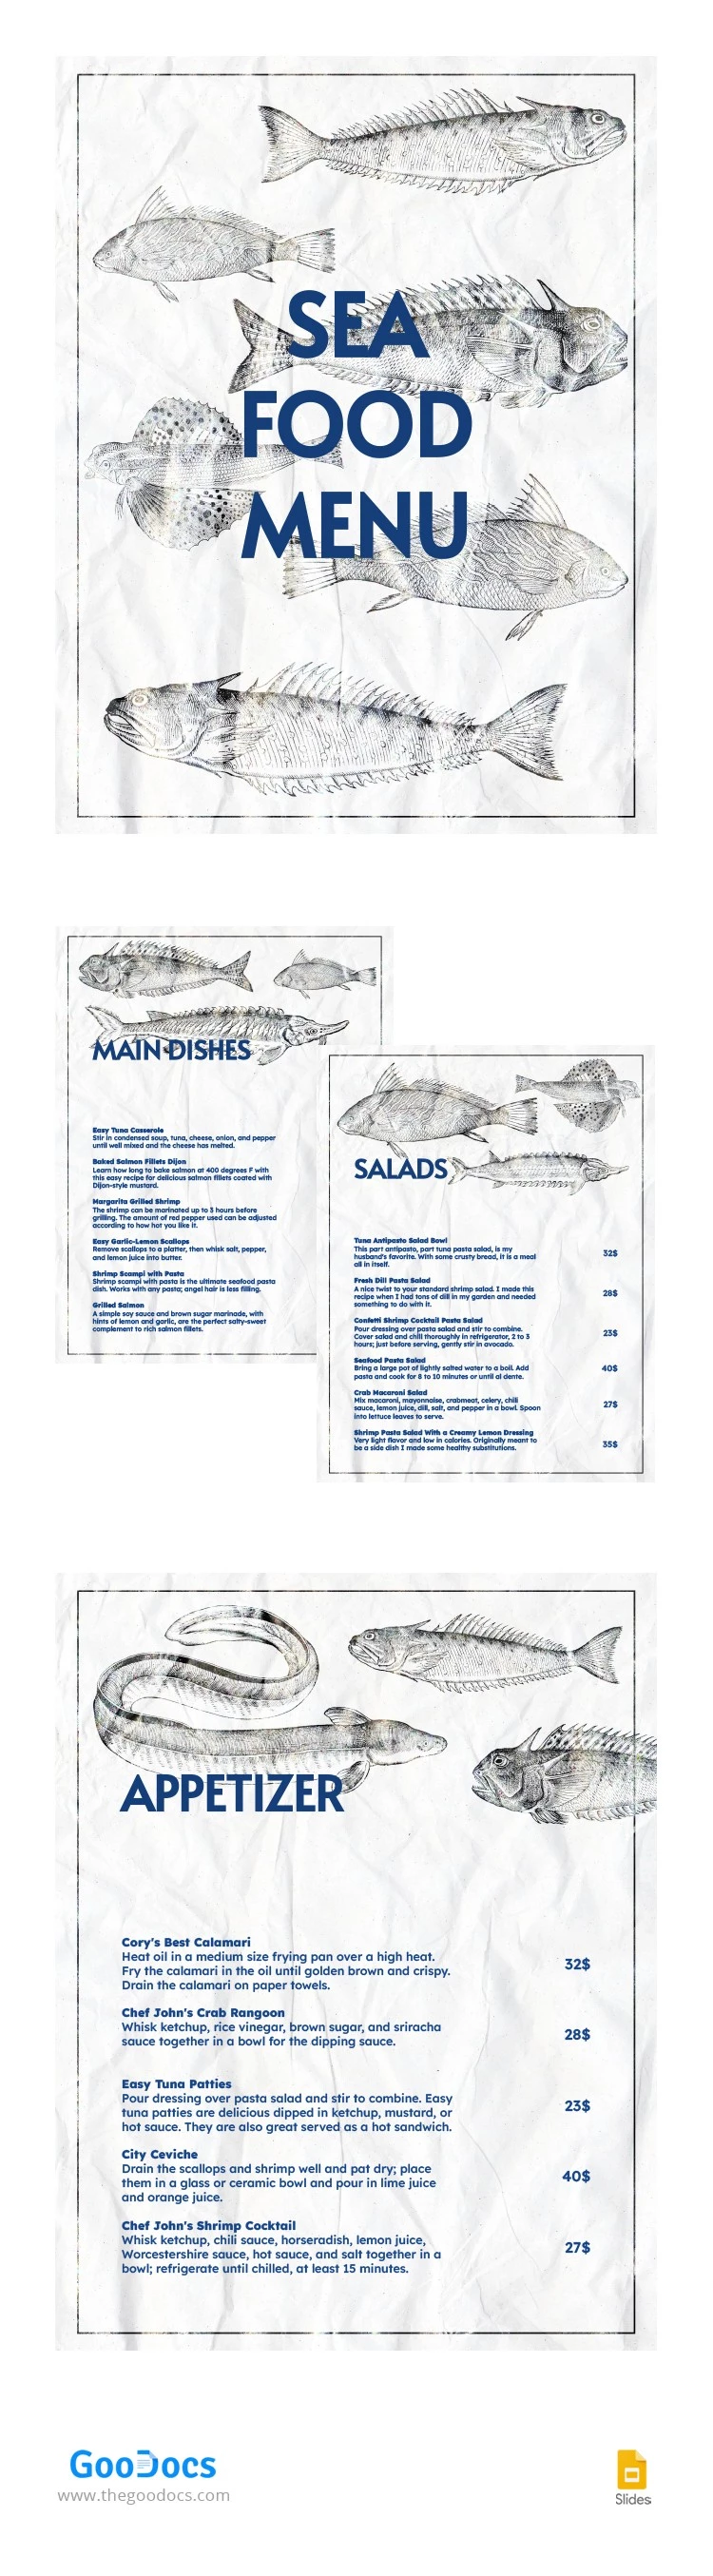 Menu del ristorante di pesce disegnato a mano - free Google Docs Template - 10064246